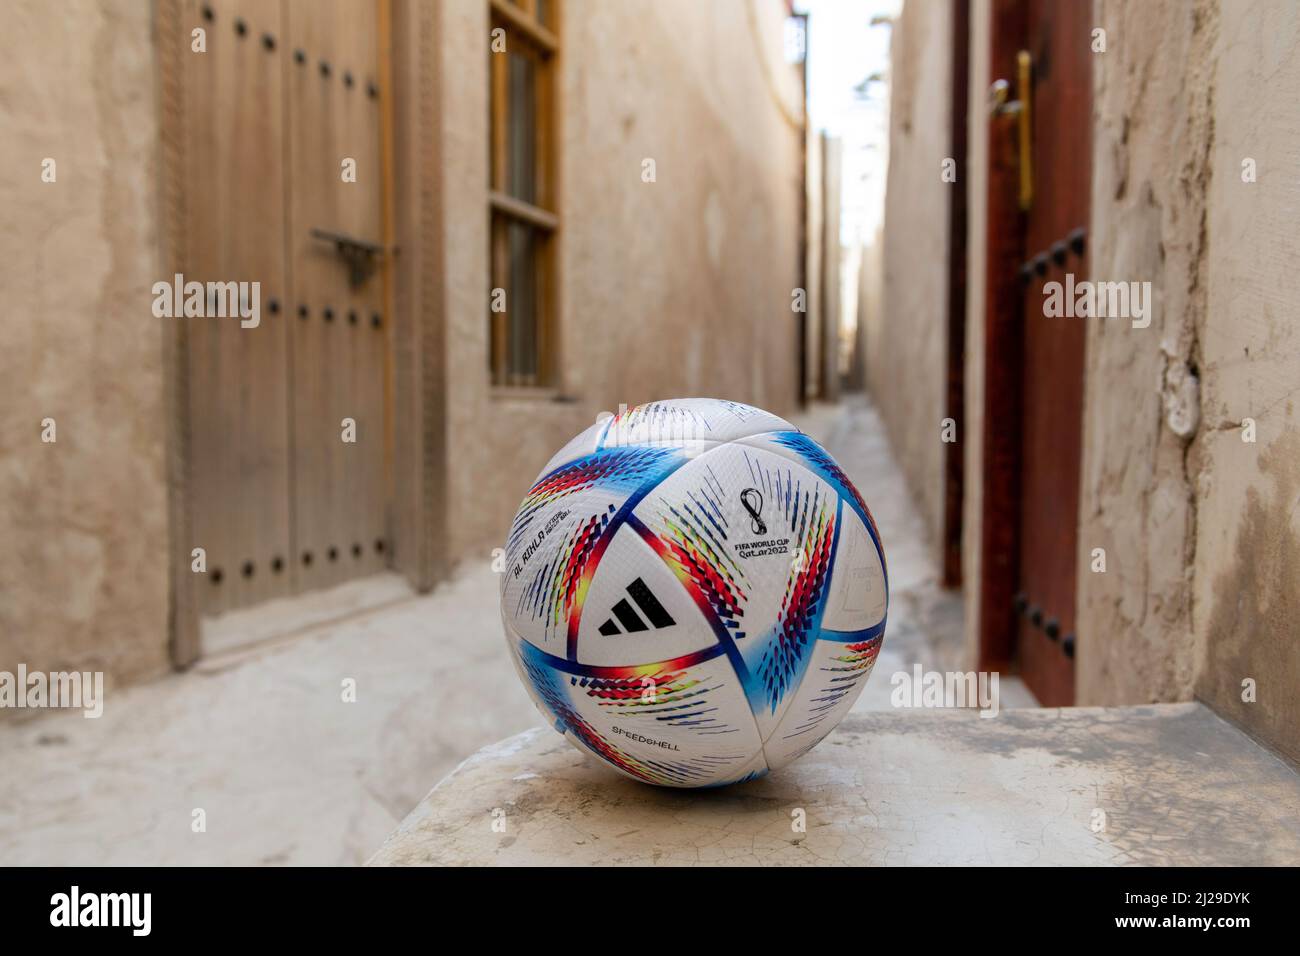 Al Rihla è stato rivelato da adidas come la palla ufficiale per la Coppa del mondo FIFA Qatar 2022™. La palla successiva del 14th che adidas ha creato per la Coppa del mondo FIFA™ è progettata per supportare velocità di gioco di picco, in quanto viaggia più velocemente in volo rispetto a qualsiasi palla nella storia del torneo. SOLO EDITORIALE! Foto Stock